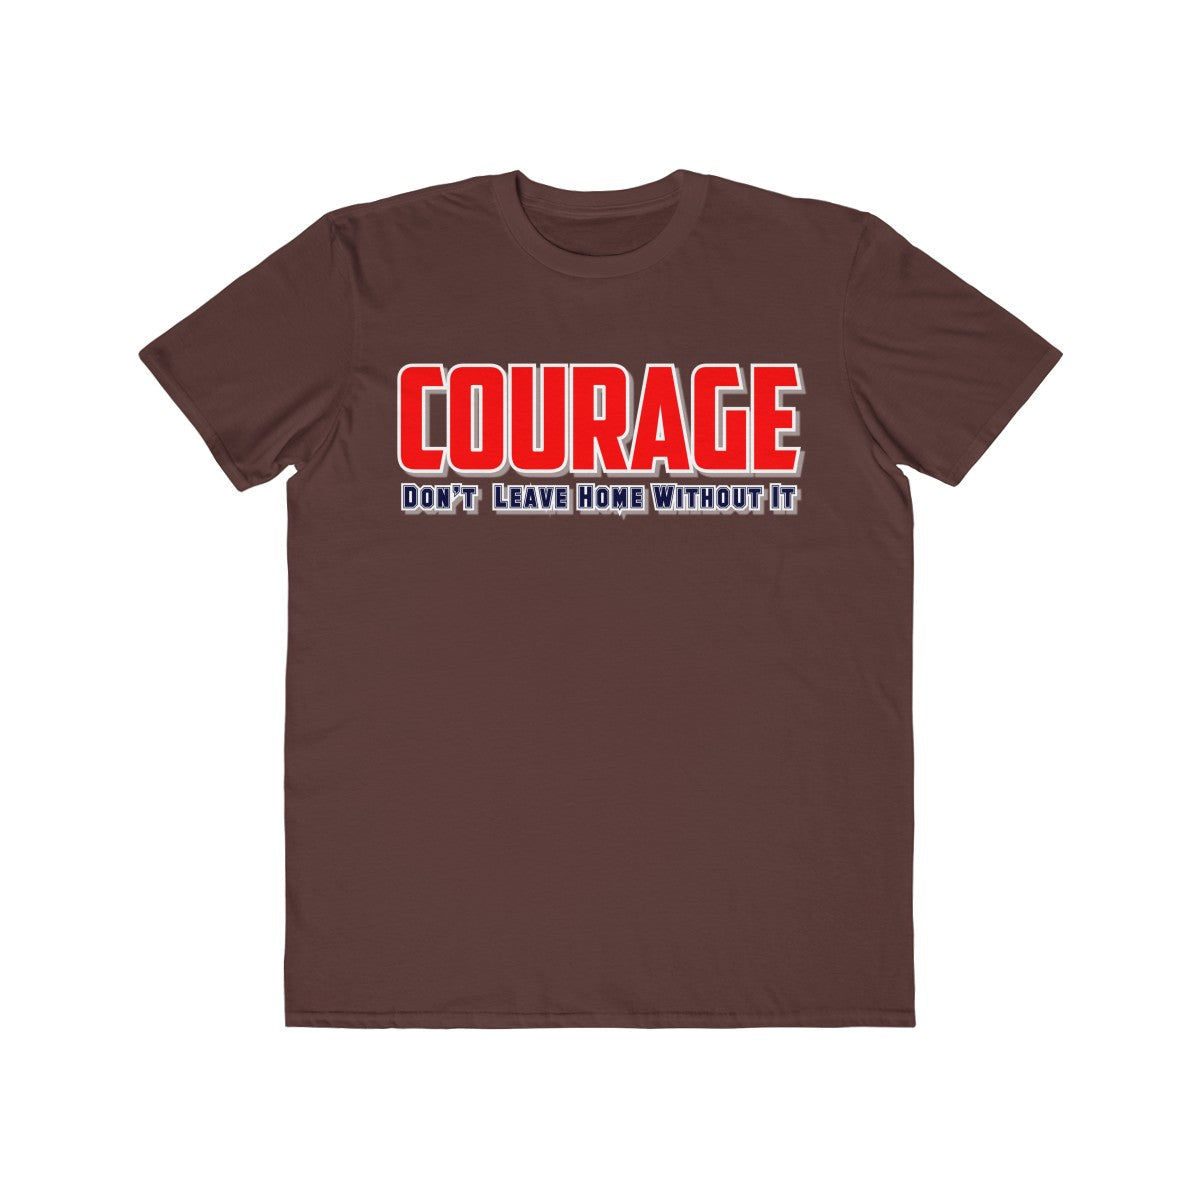 Men's Lightweight Fashion Tee - Courage IV